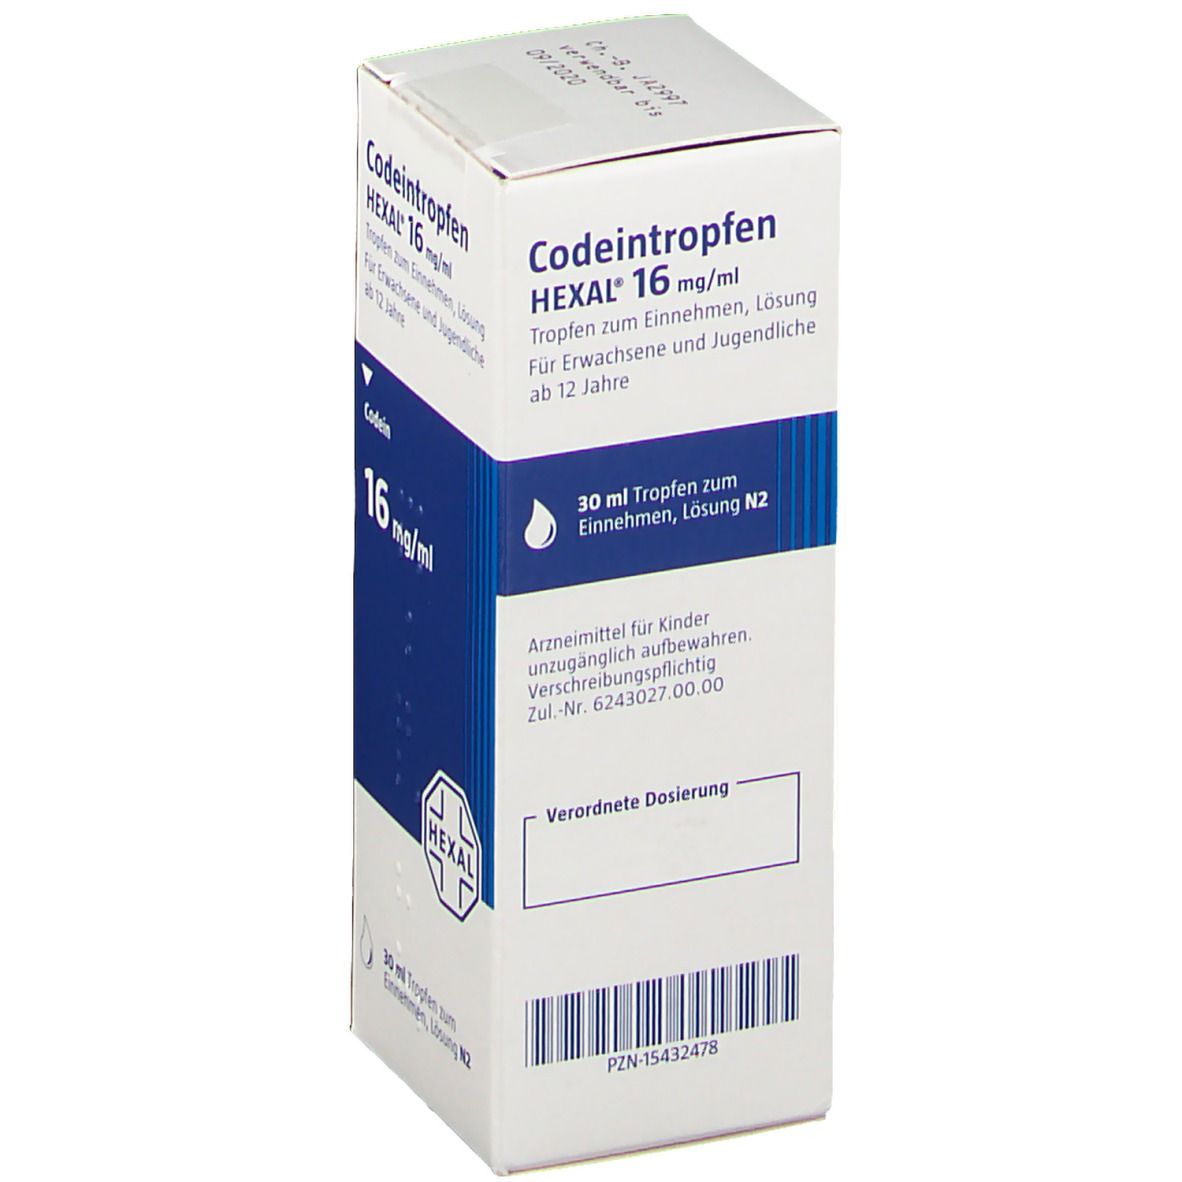 CODEINTROPFEN HEXAL 16 mg/ml Tropfen z.Einnehmen